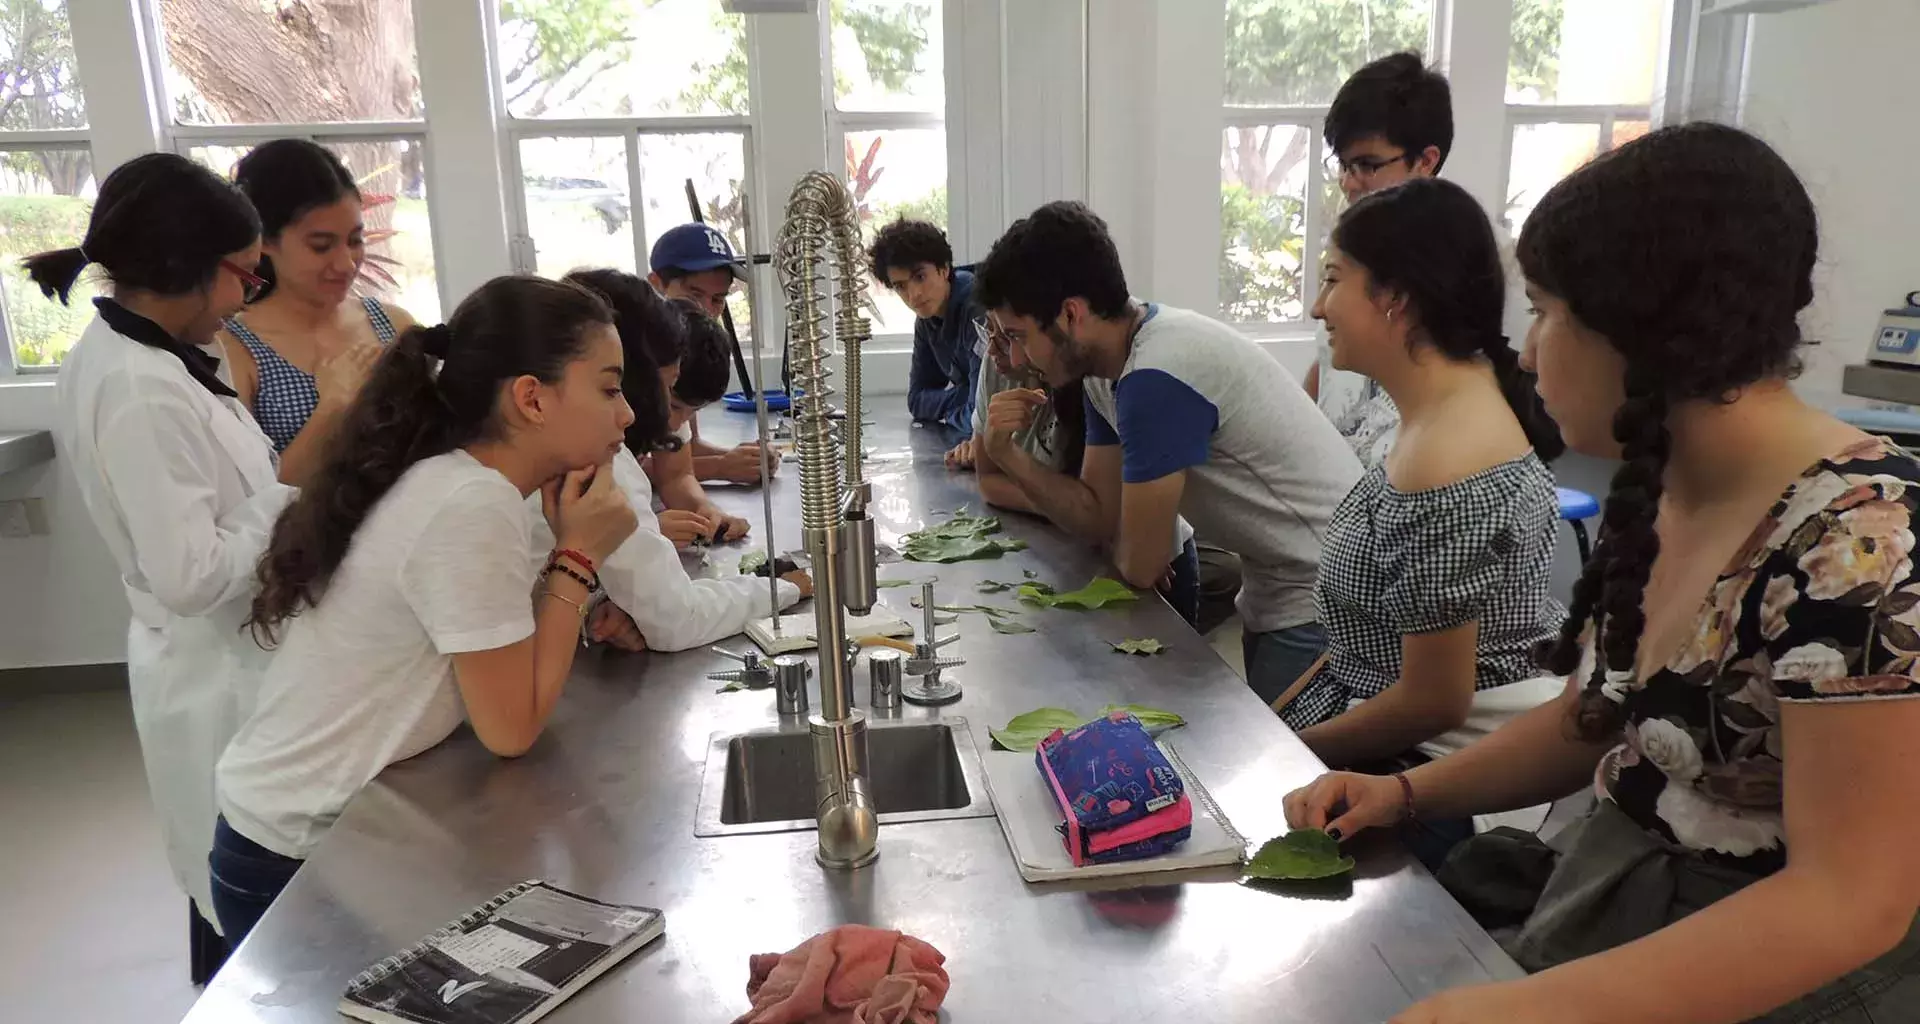 Ovis Canadensis, grupo estudiantil enfocado a la biología y ciencias